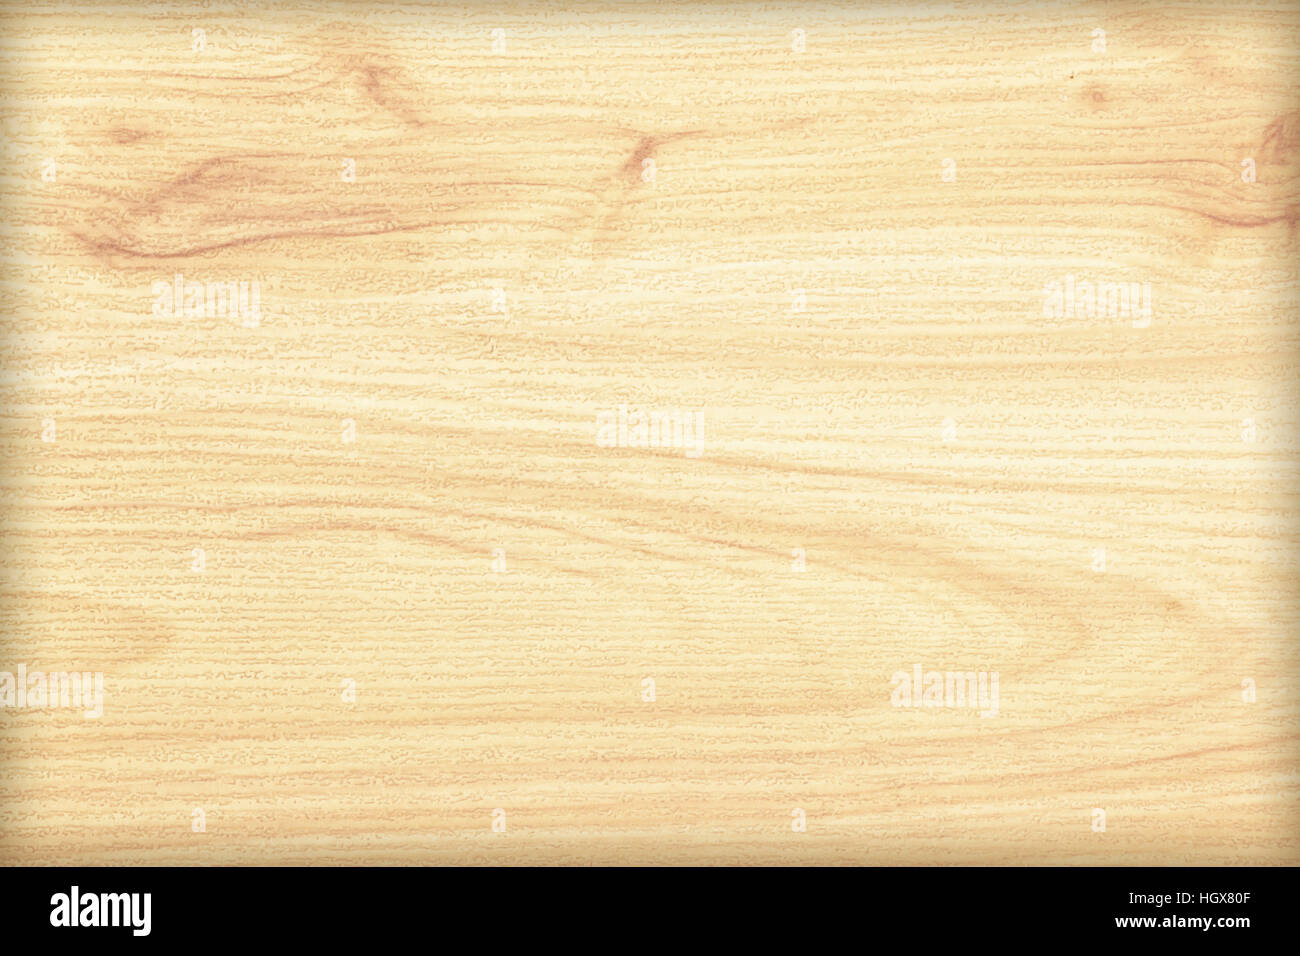 Bóng rổ chất lượng cao được làm từ gỗ thích sẽ là sự lựa chọn hoàn hảo cho bất kỳ người yêu thể thao nào. Sử dụng loại gỗ này thể hiện sự chuyên nghiệp và độ bền vô song.